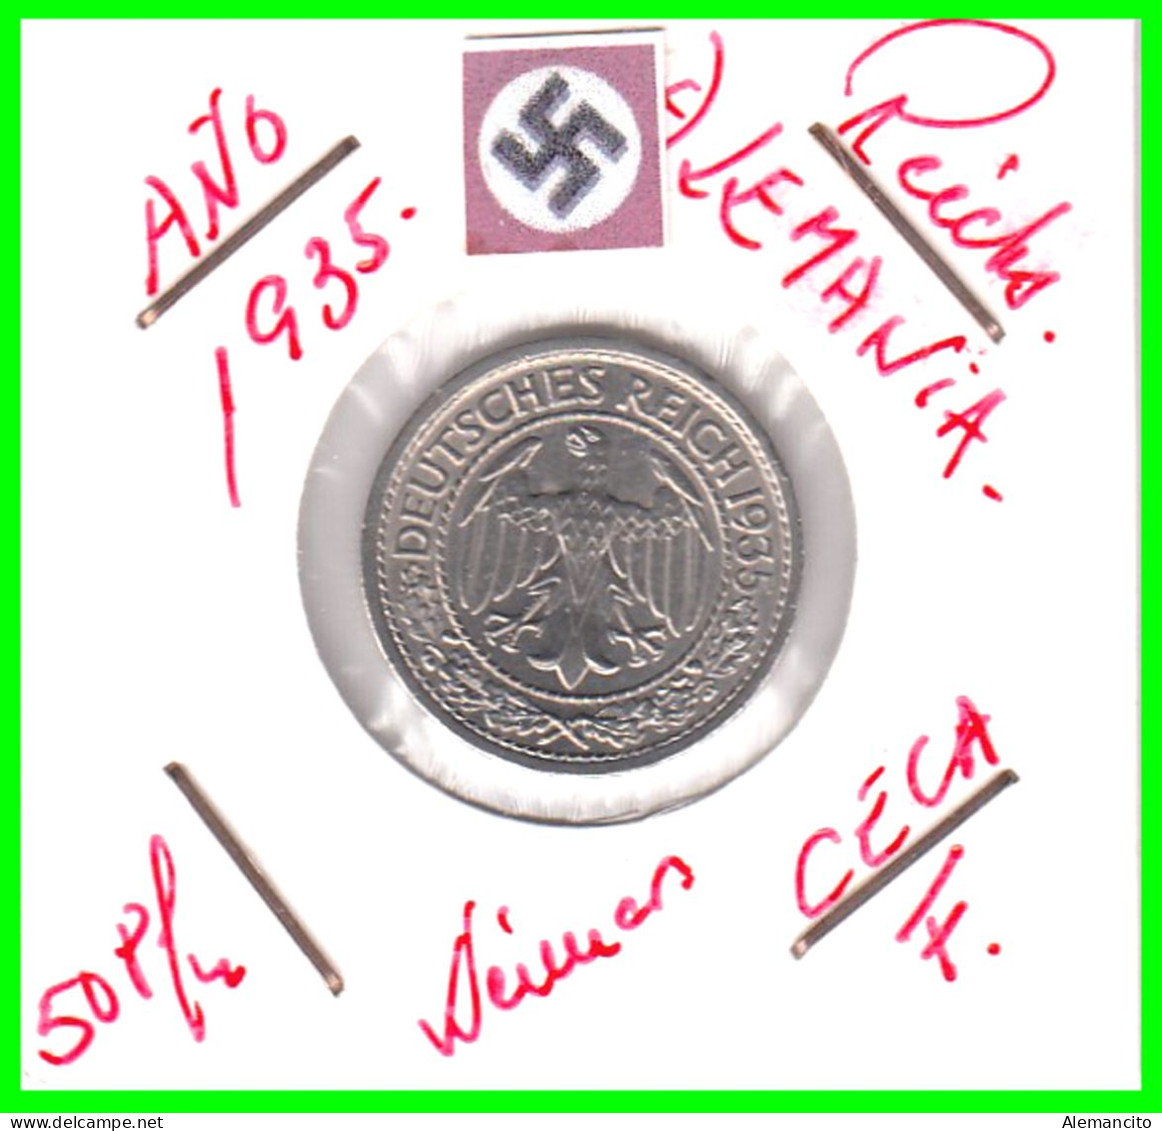 GERMANY REPÚBLICA DE WEIMAR 50 REICHSPFENNIG ( 1935 CECA - F )  (REICHSPFENNIG KM # 40 - 50 Renten- & 50 Reichspfennig